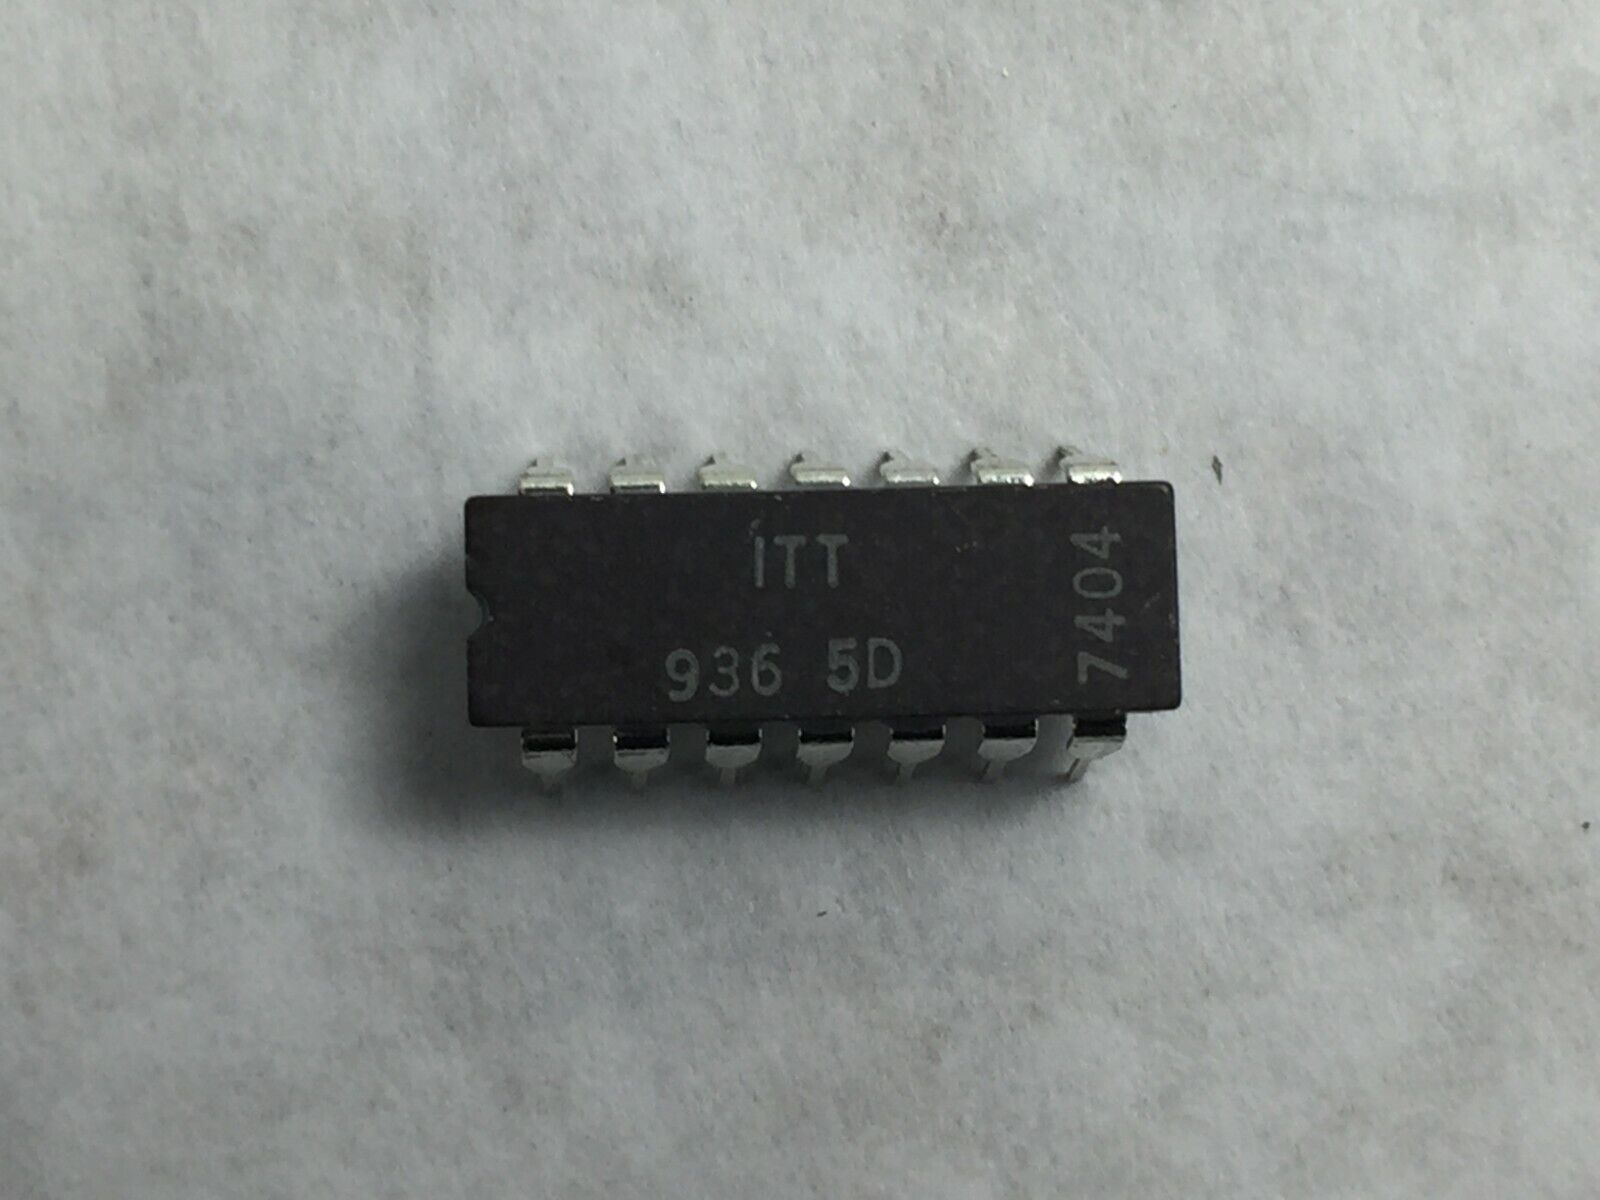 (14) ITT 936 5D  Integrated Circuit  Lot of 14